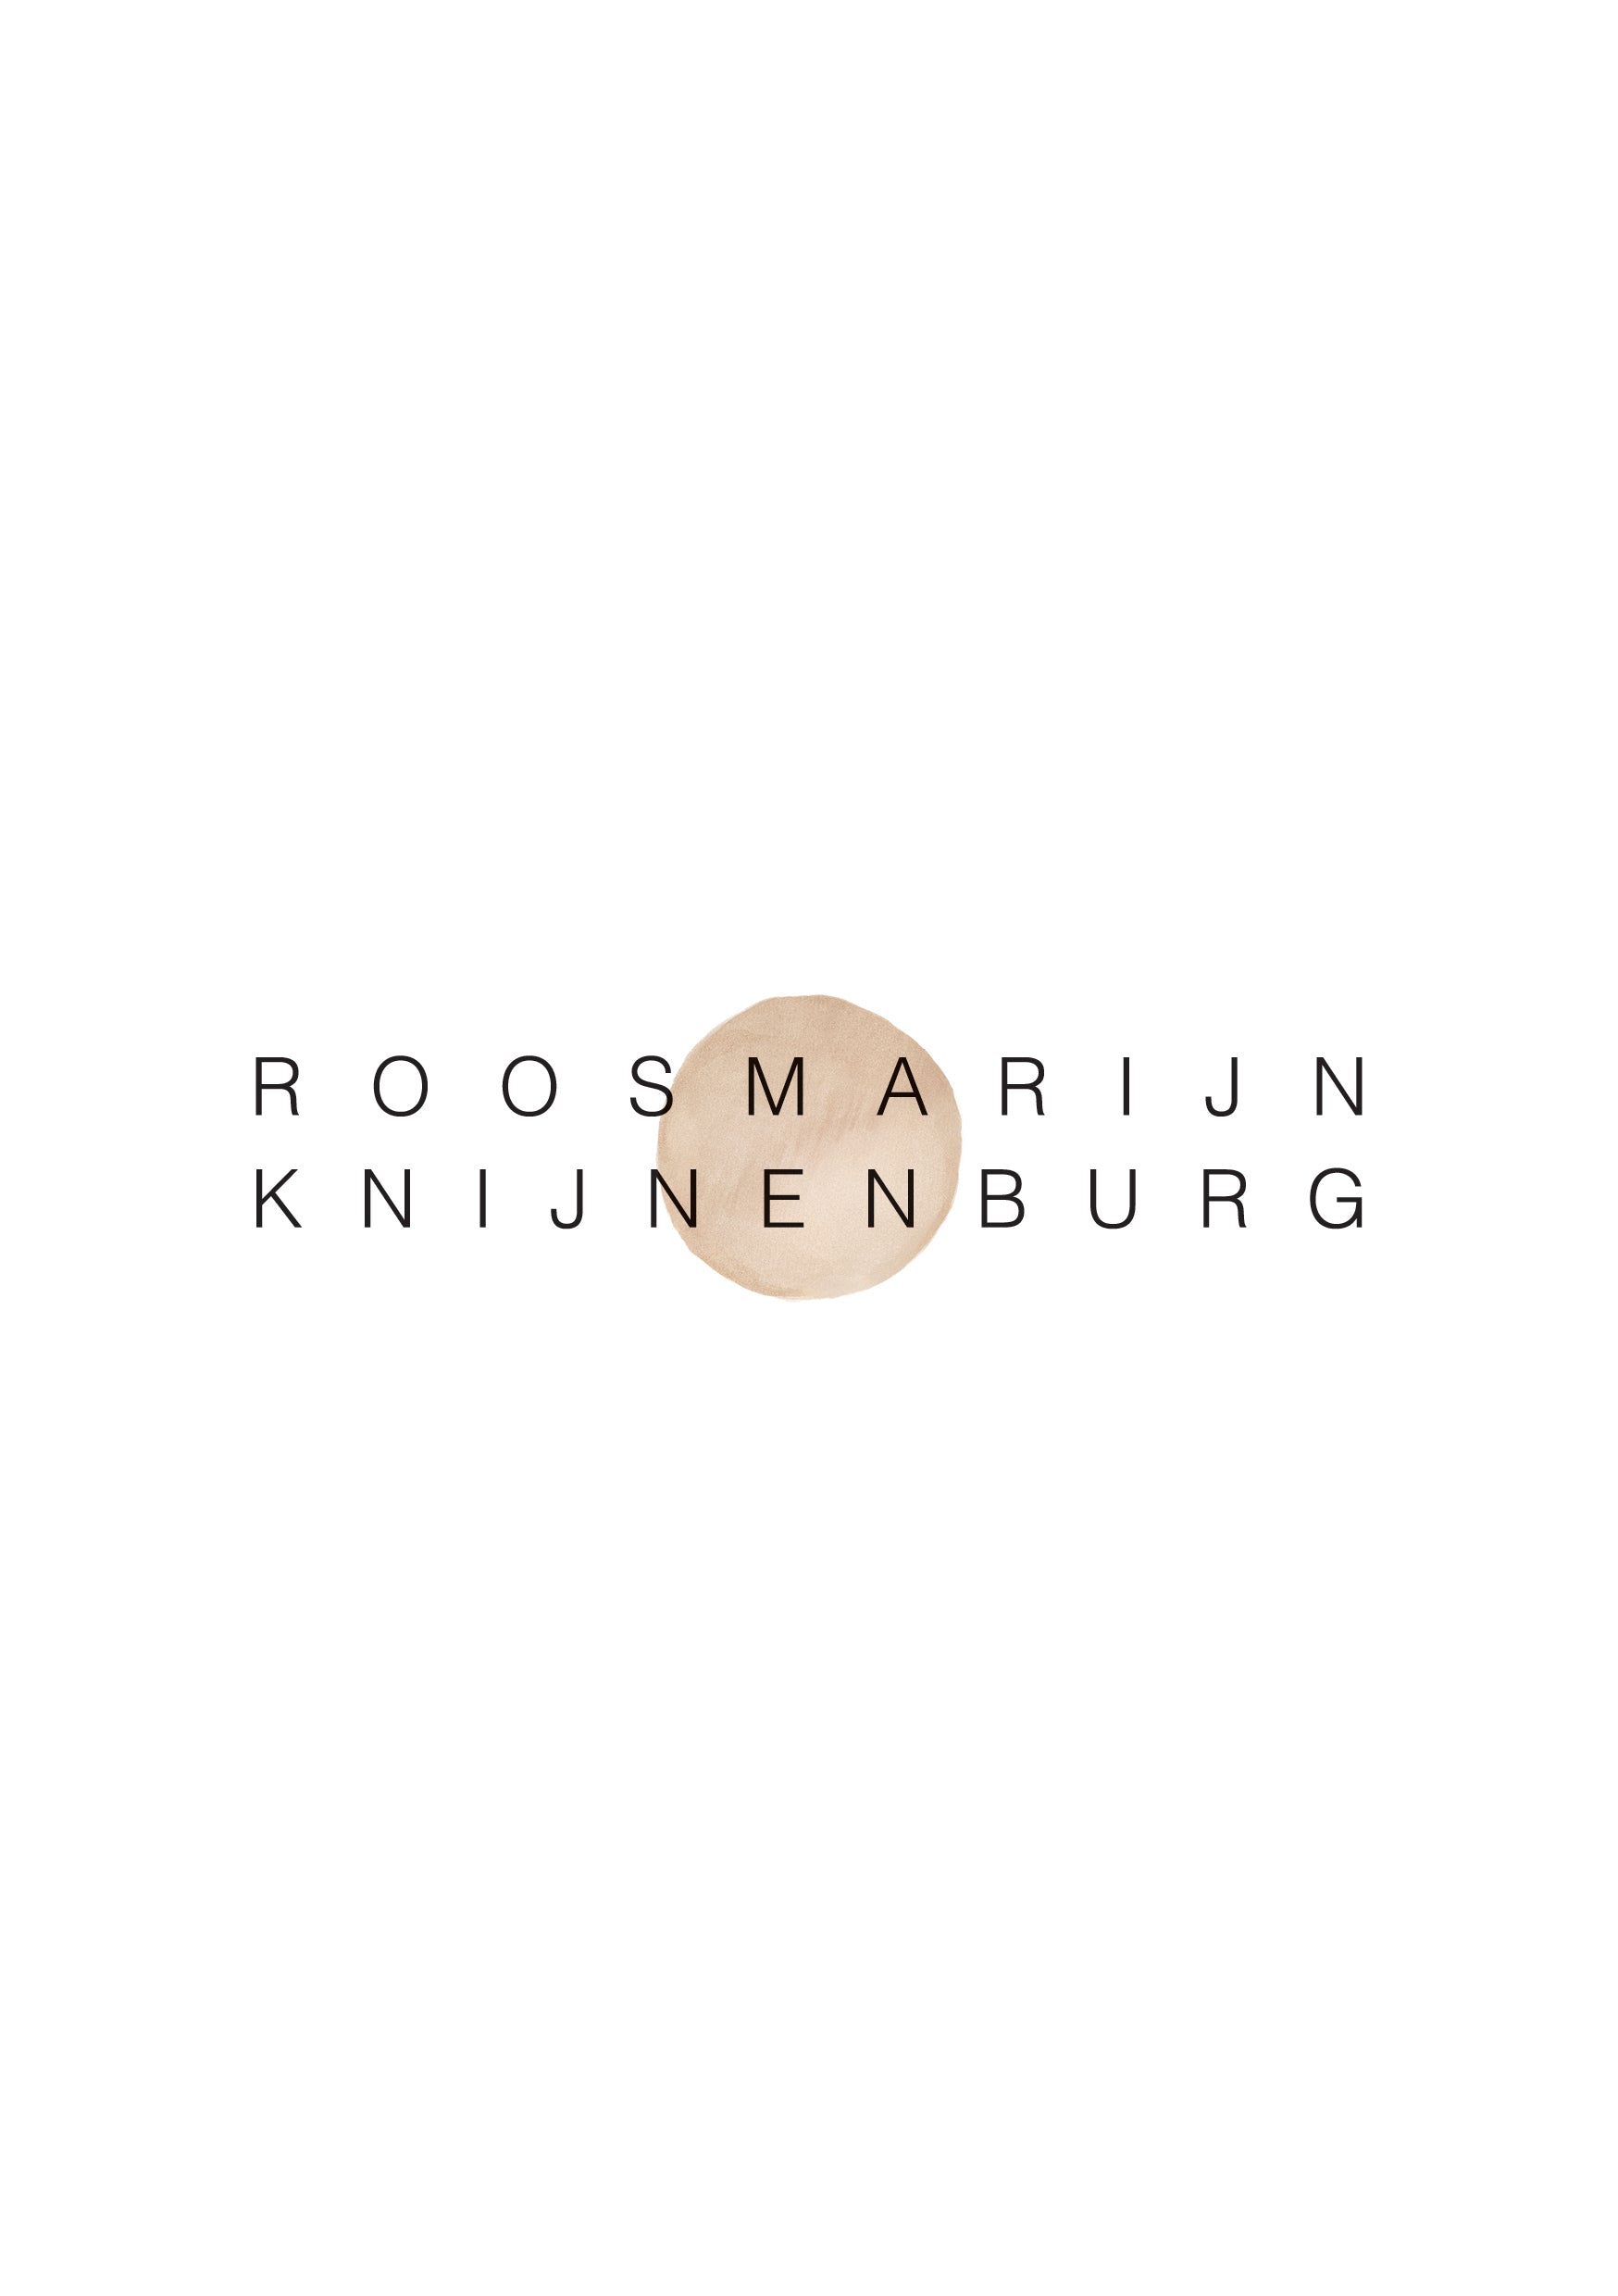 Roosmarijn Knijnenburg - Hold it's